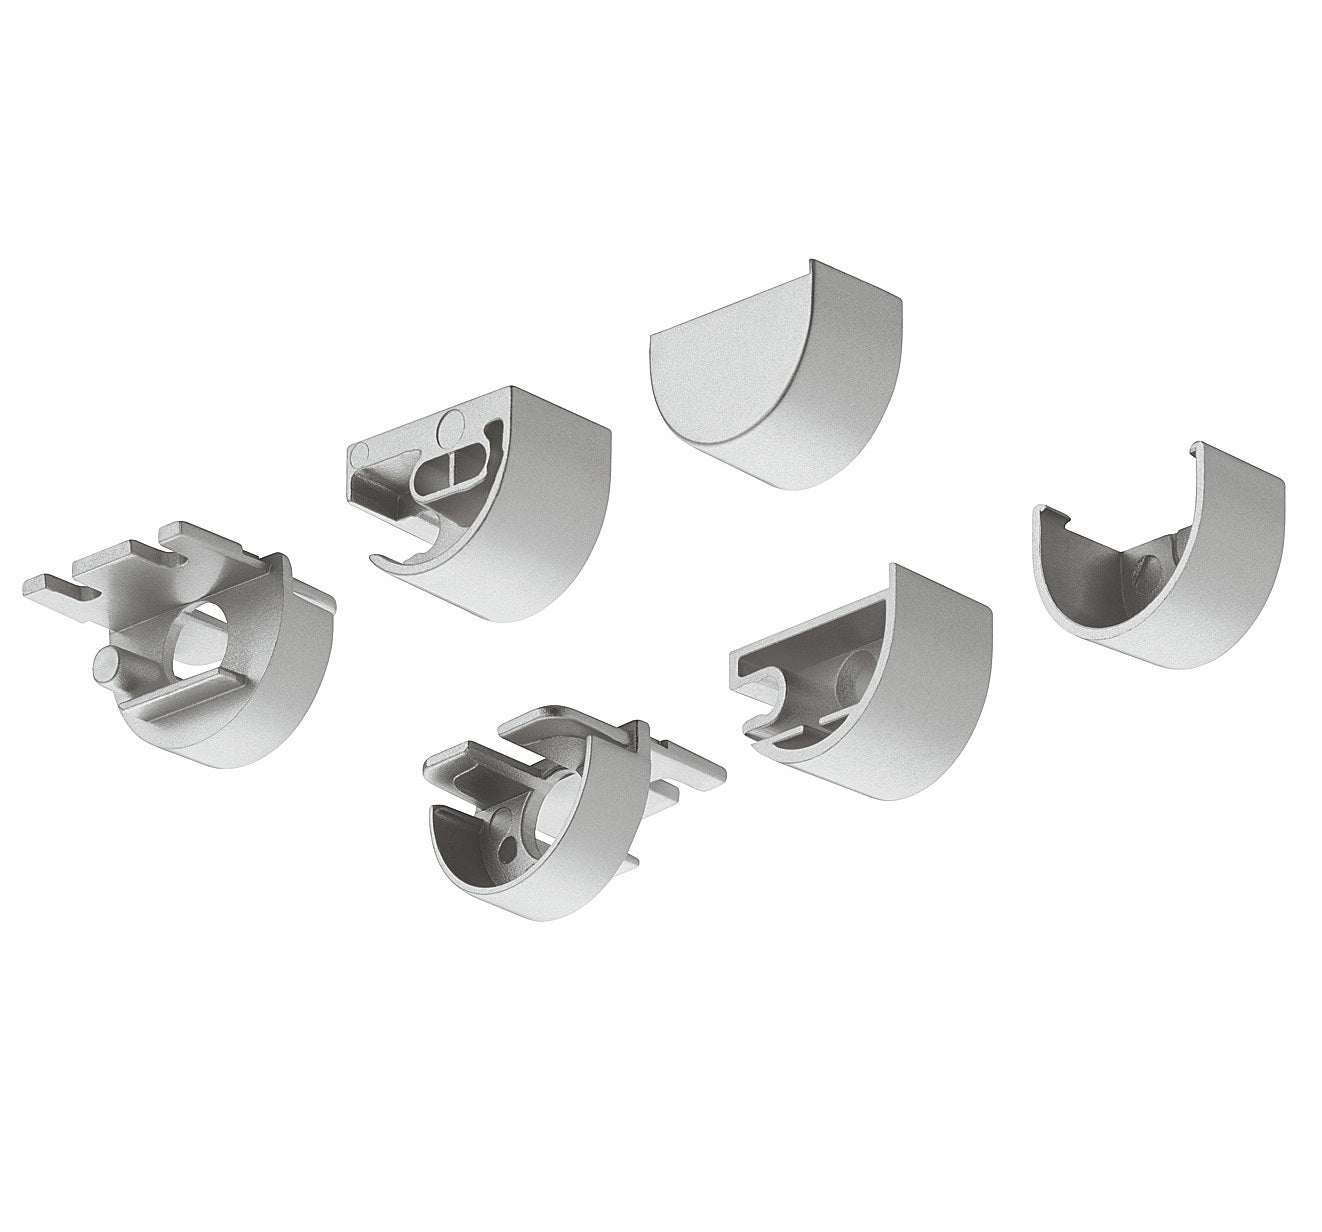 Hafele Loox Round Aluminum Profile End Cap Set, 5 Pack